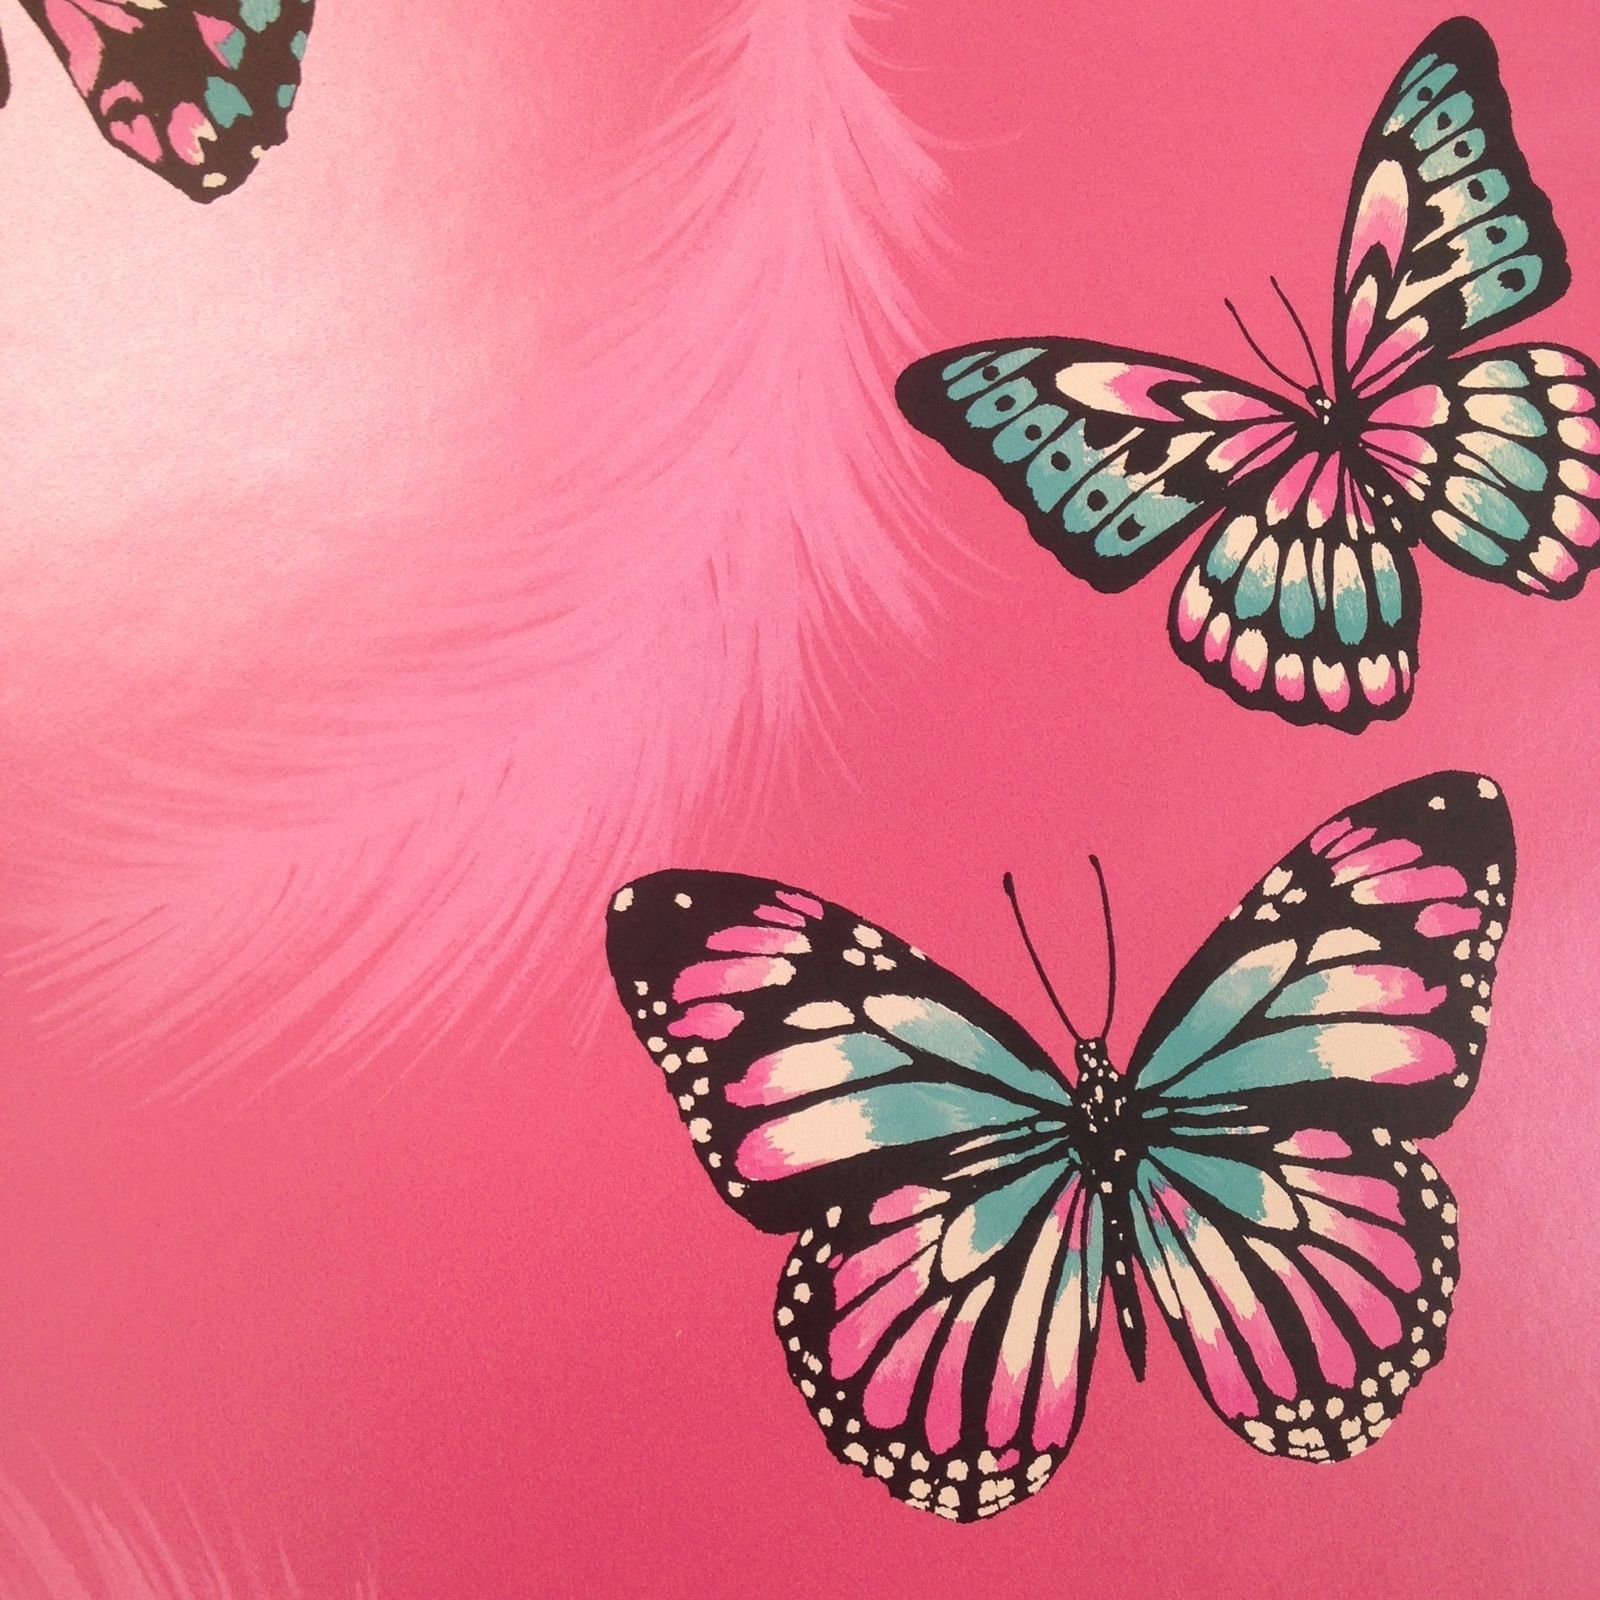 蝶の壁紙英国,バタフライ,シンシア亜属,昆虫,蛾と蝶,ピンク